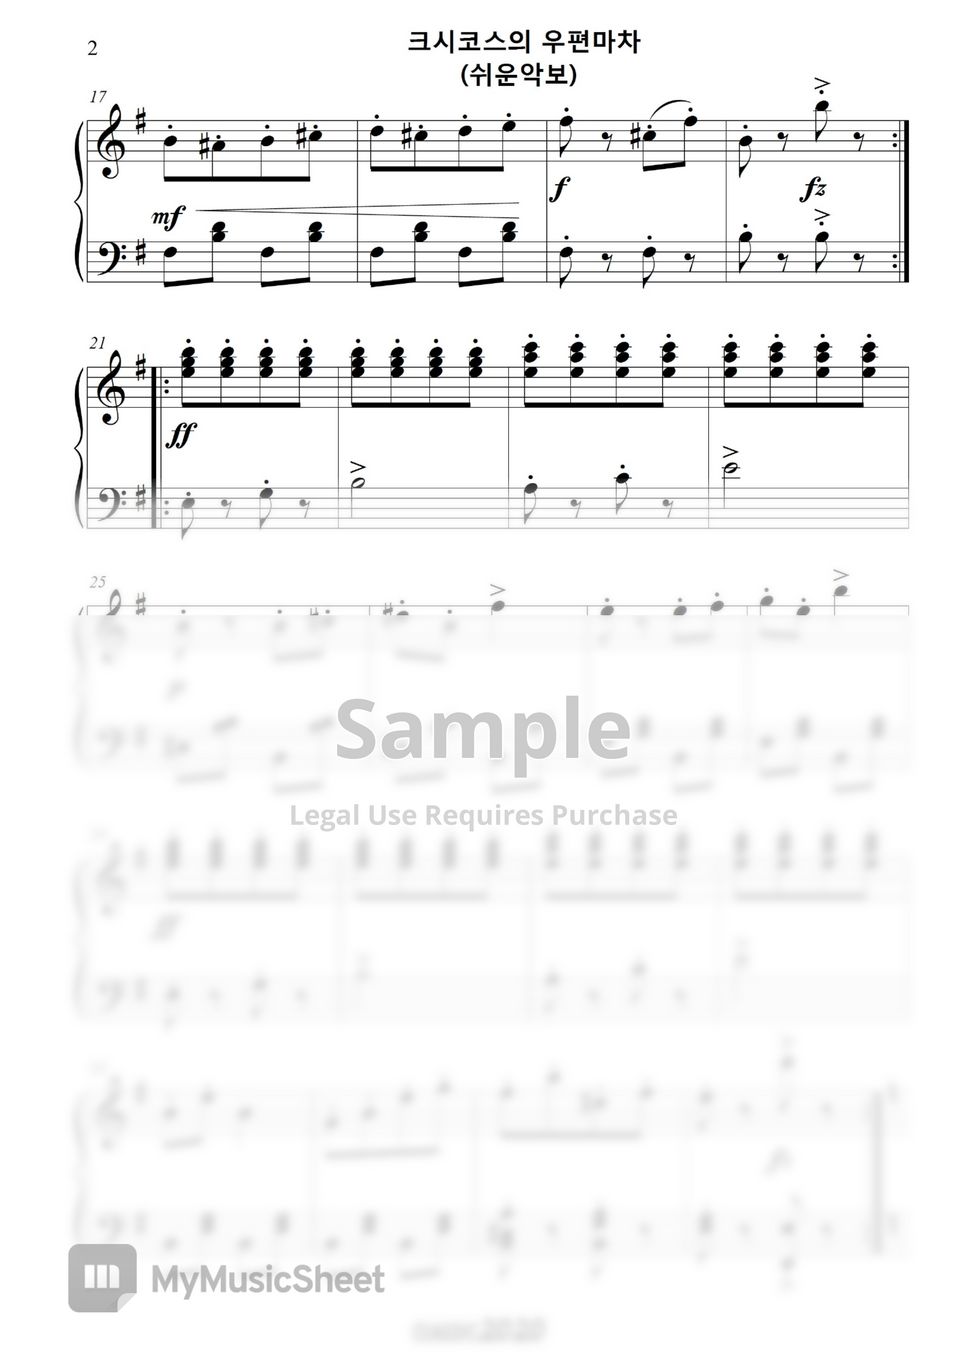 H. Necke - Csiskos Post in E minor (easy piano) by classic2020